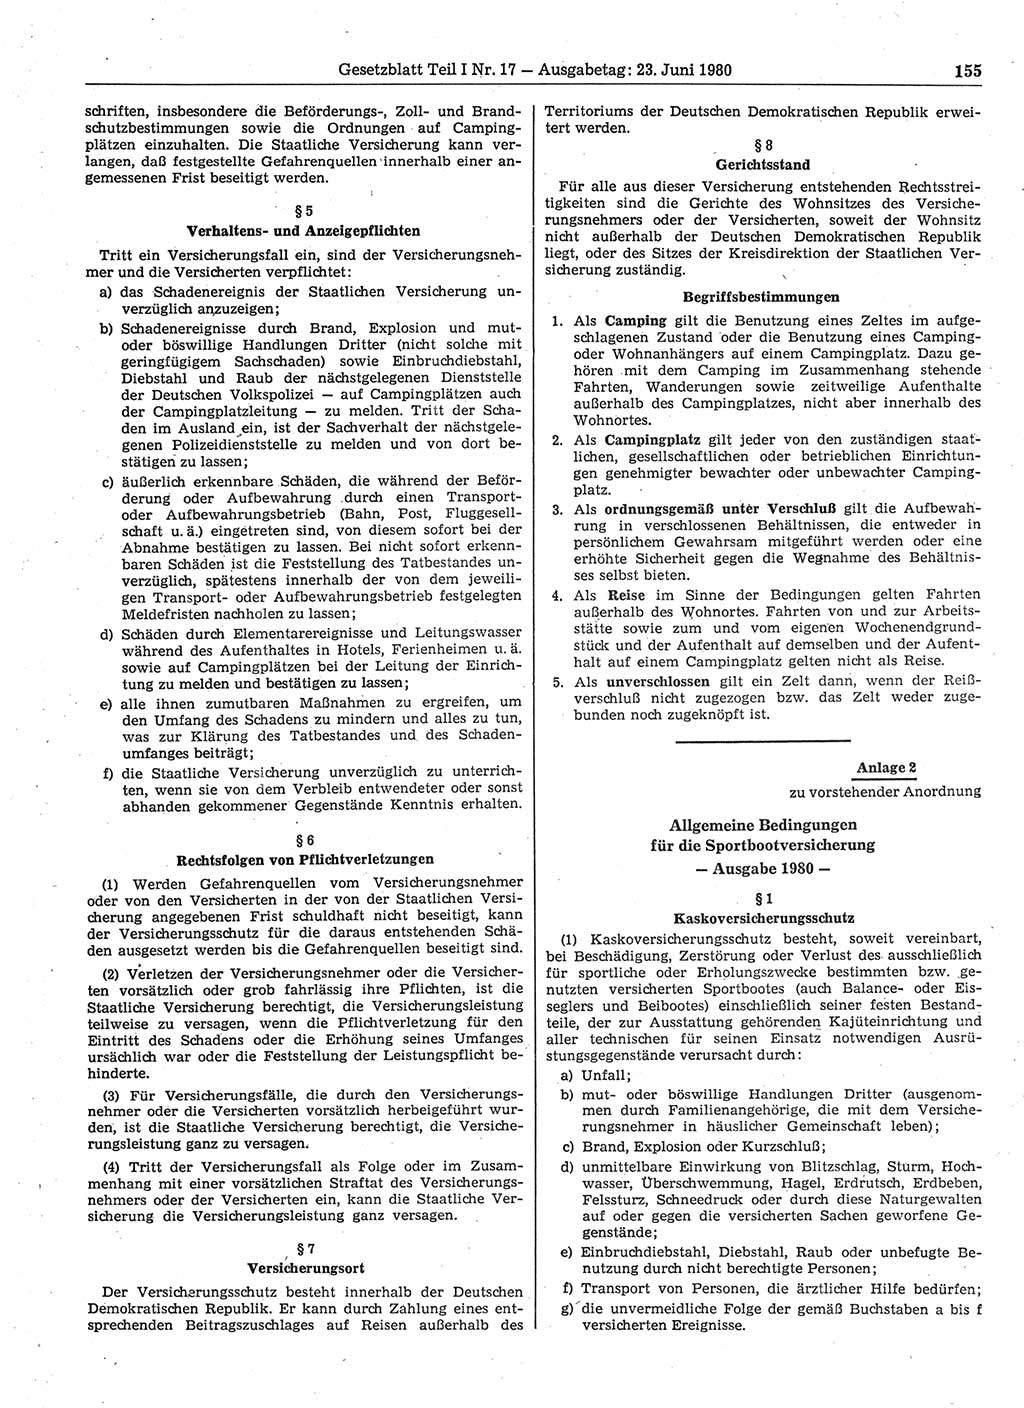 Gesetzblatt (GBl.) der Deutschen Demokratischen Republik (DDR) Teil Ⅰ 1980, Seite 155 (GBl. DDR Ⅰ 1980, S. 155)